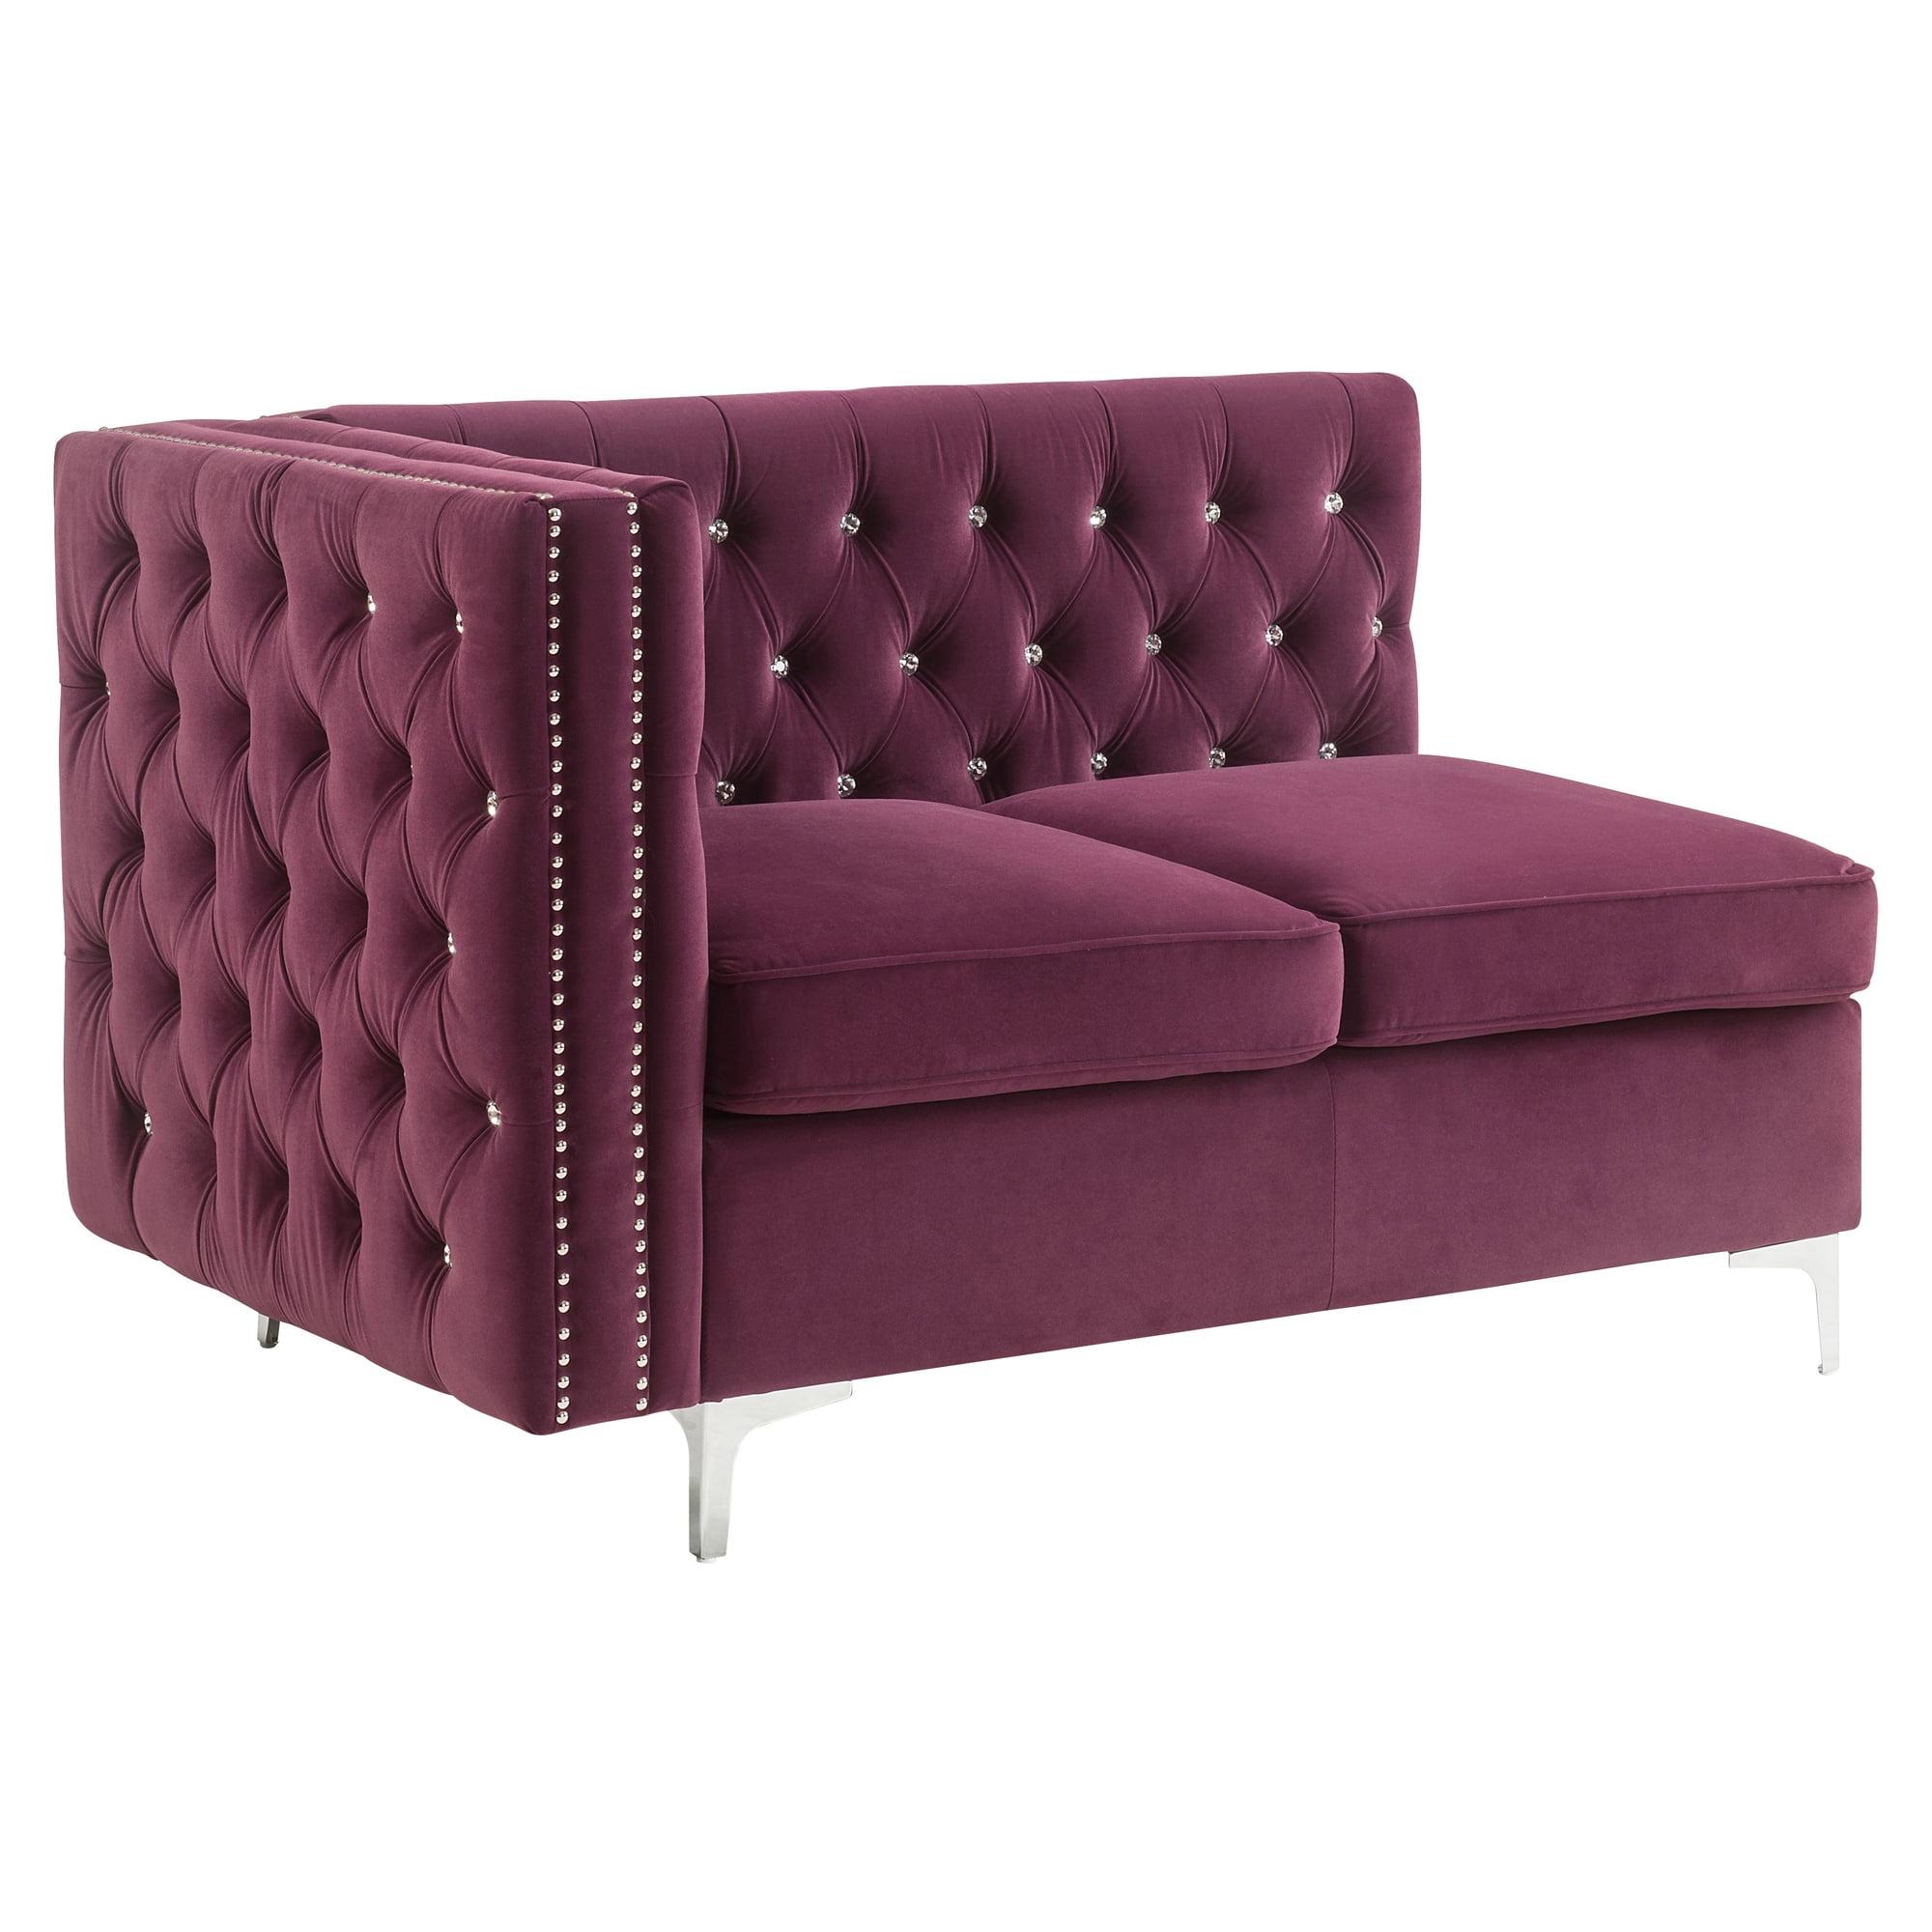 Jaszira Burgundy Velvet Modular Sofa with Gold-Tipped Legs